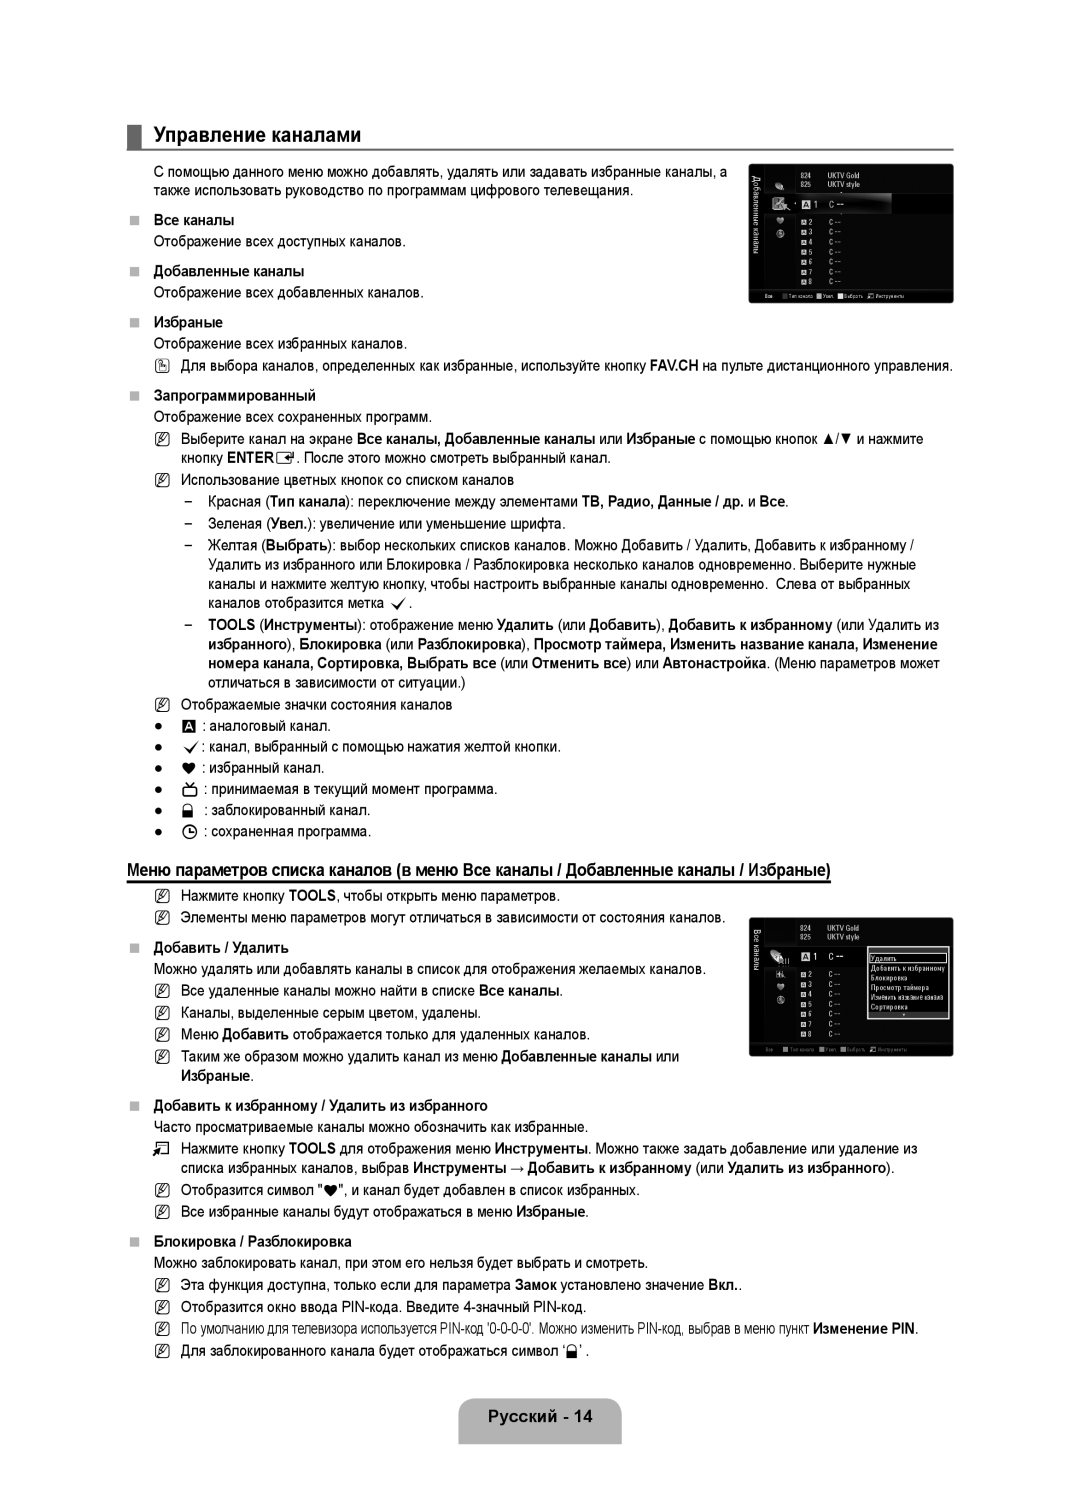 Samsung UE46B6000VWXZG manual Управление каналами, Все каналы, Добавленные каналы, Избраные, Запрограммированный, Русский 